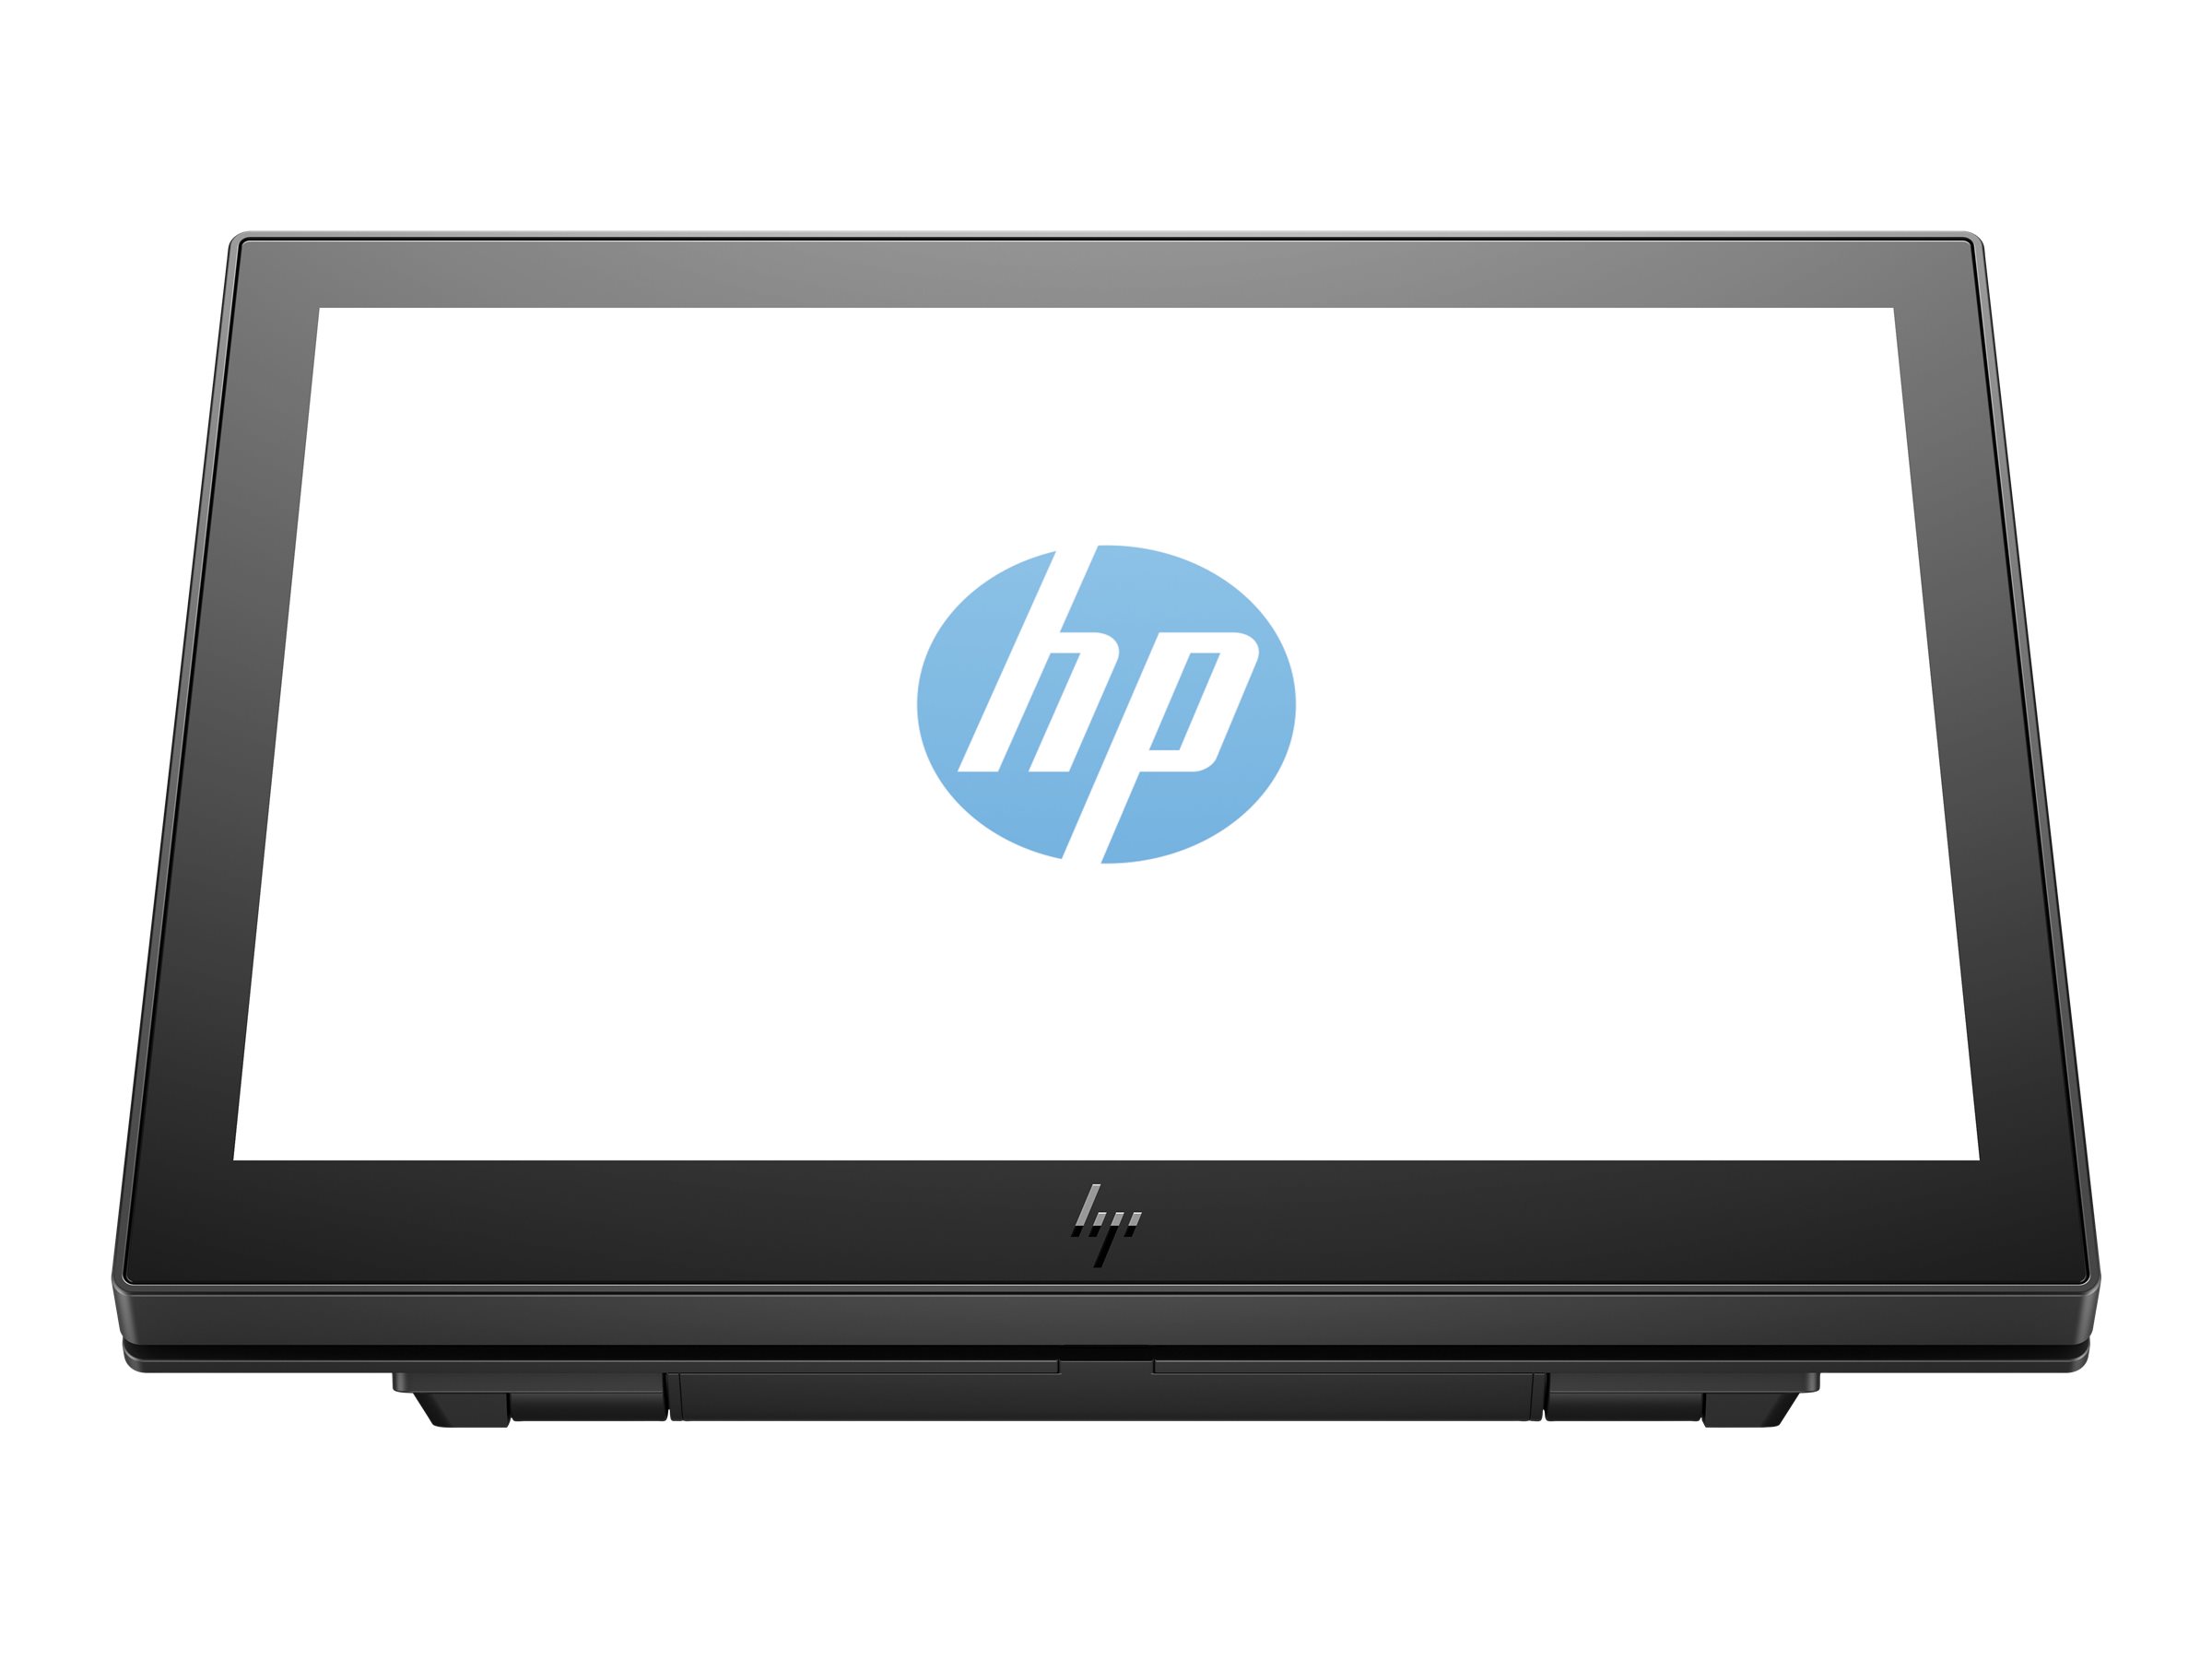 HP Engage One 10t - Affichage client - 10.1" - écran tactile - 1280 x 800 @ 60 Hz - IPS - 25 ms - pour EliteBook 745 G5, 830 G6, 840 G5, 840 G6; Engage One Essential, Pro; ZBook Studio G4 - 1XD81AA - Écrans pour point de vente